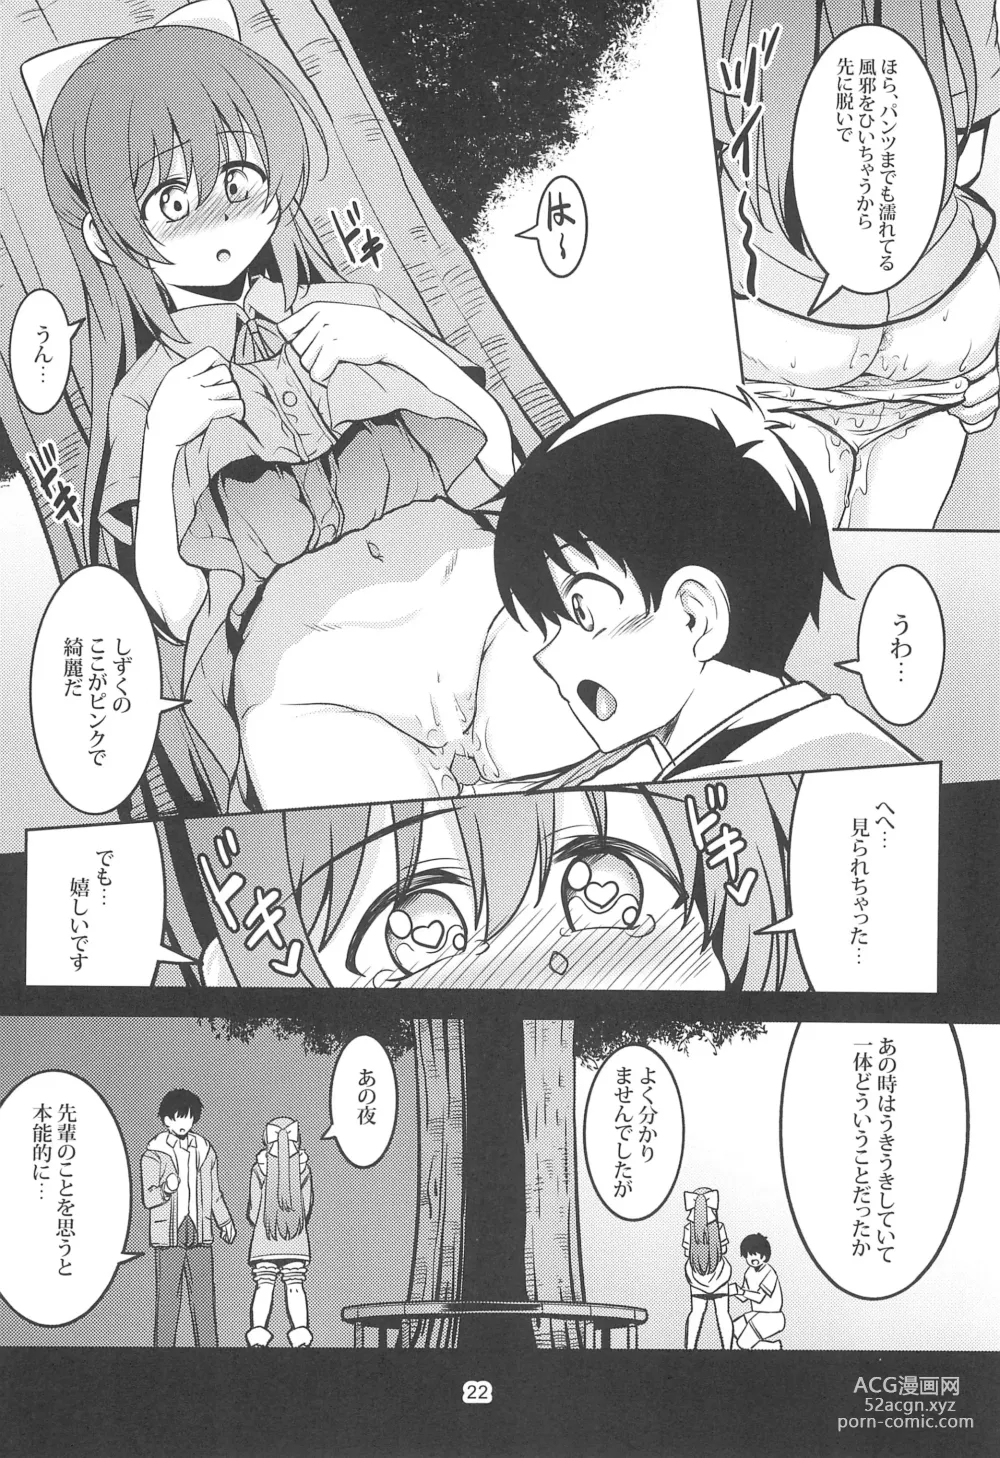 Page 24 of doujinshi Miwaku no Shizuku